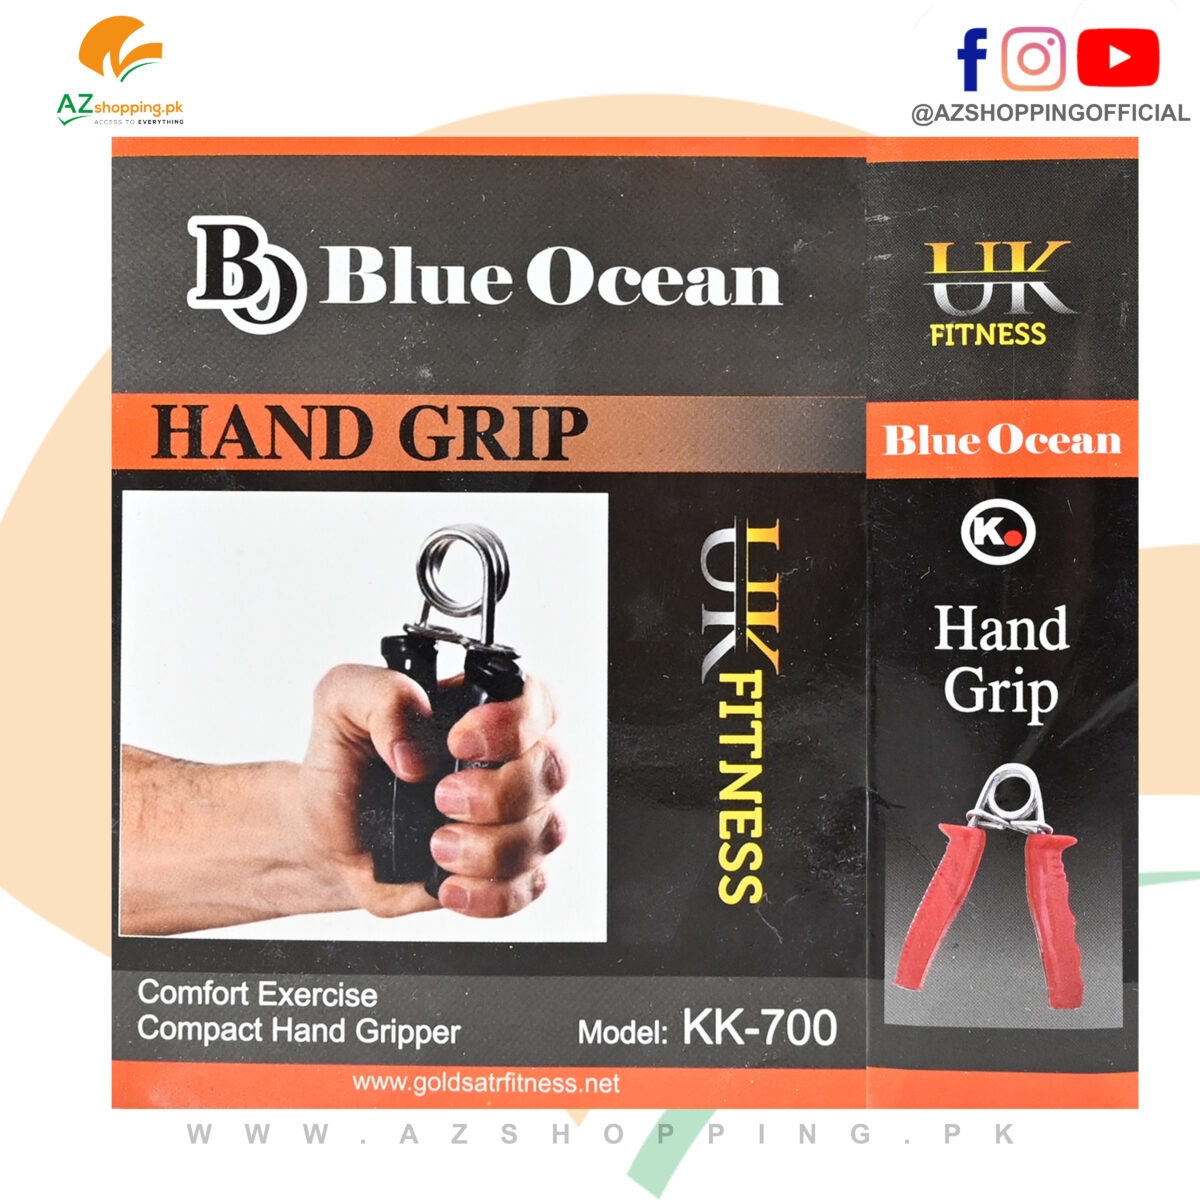 Hand Grip Strengthener Set of 2 for Increasing Wrist Power Strength – Model: KK-700